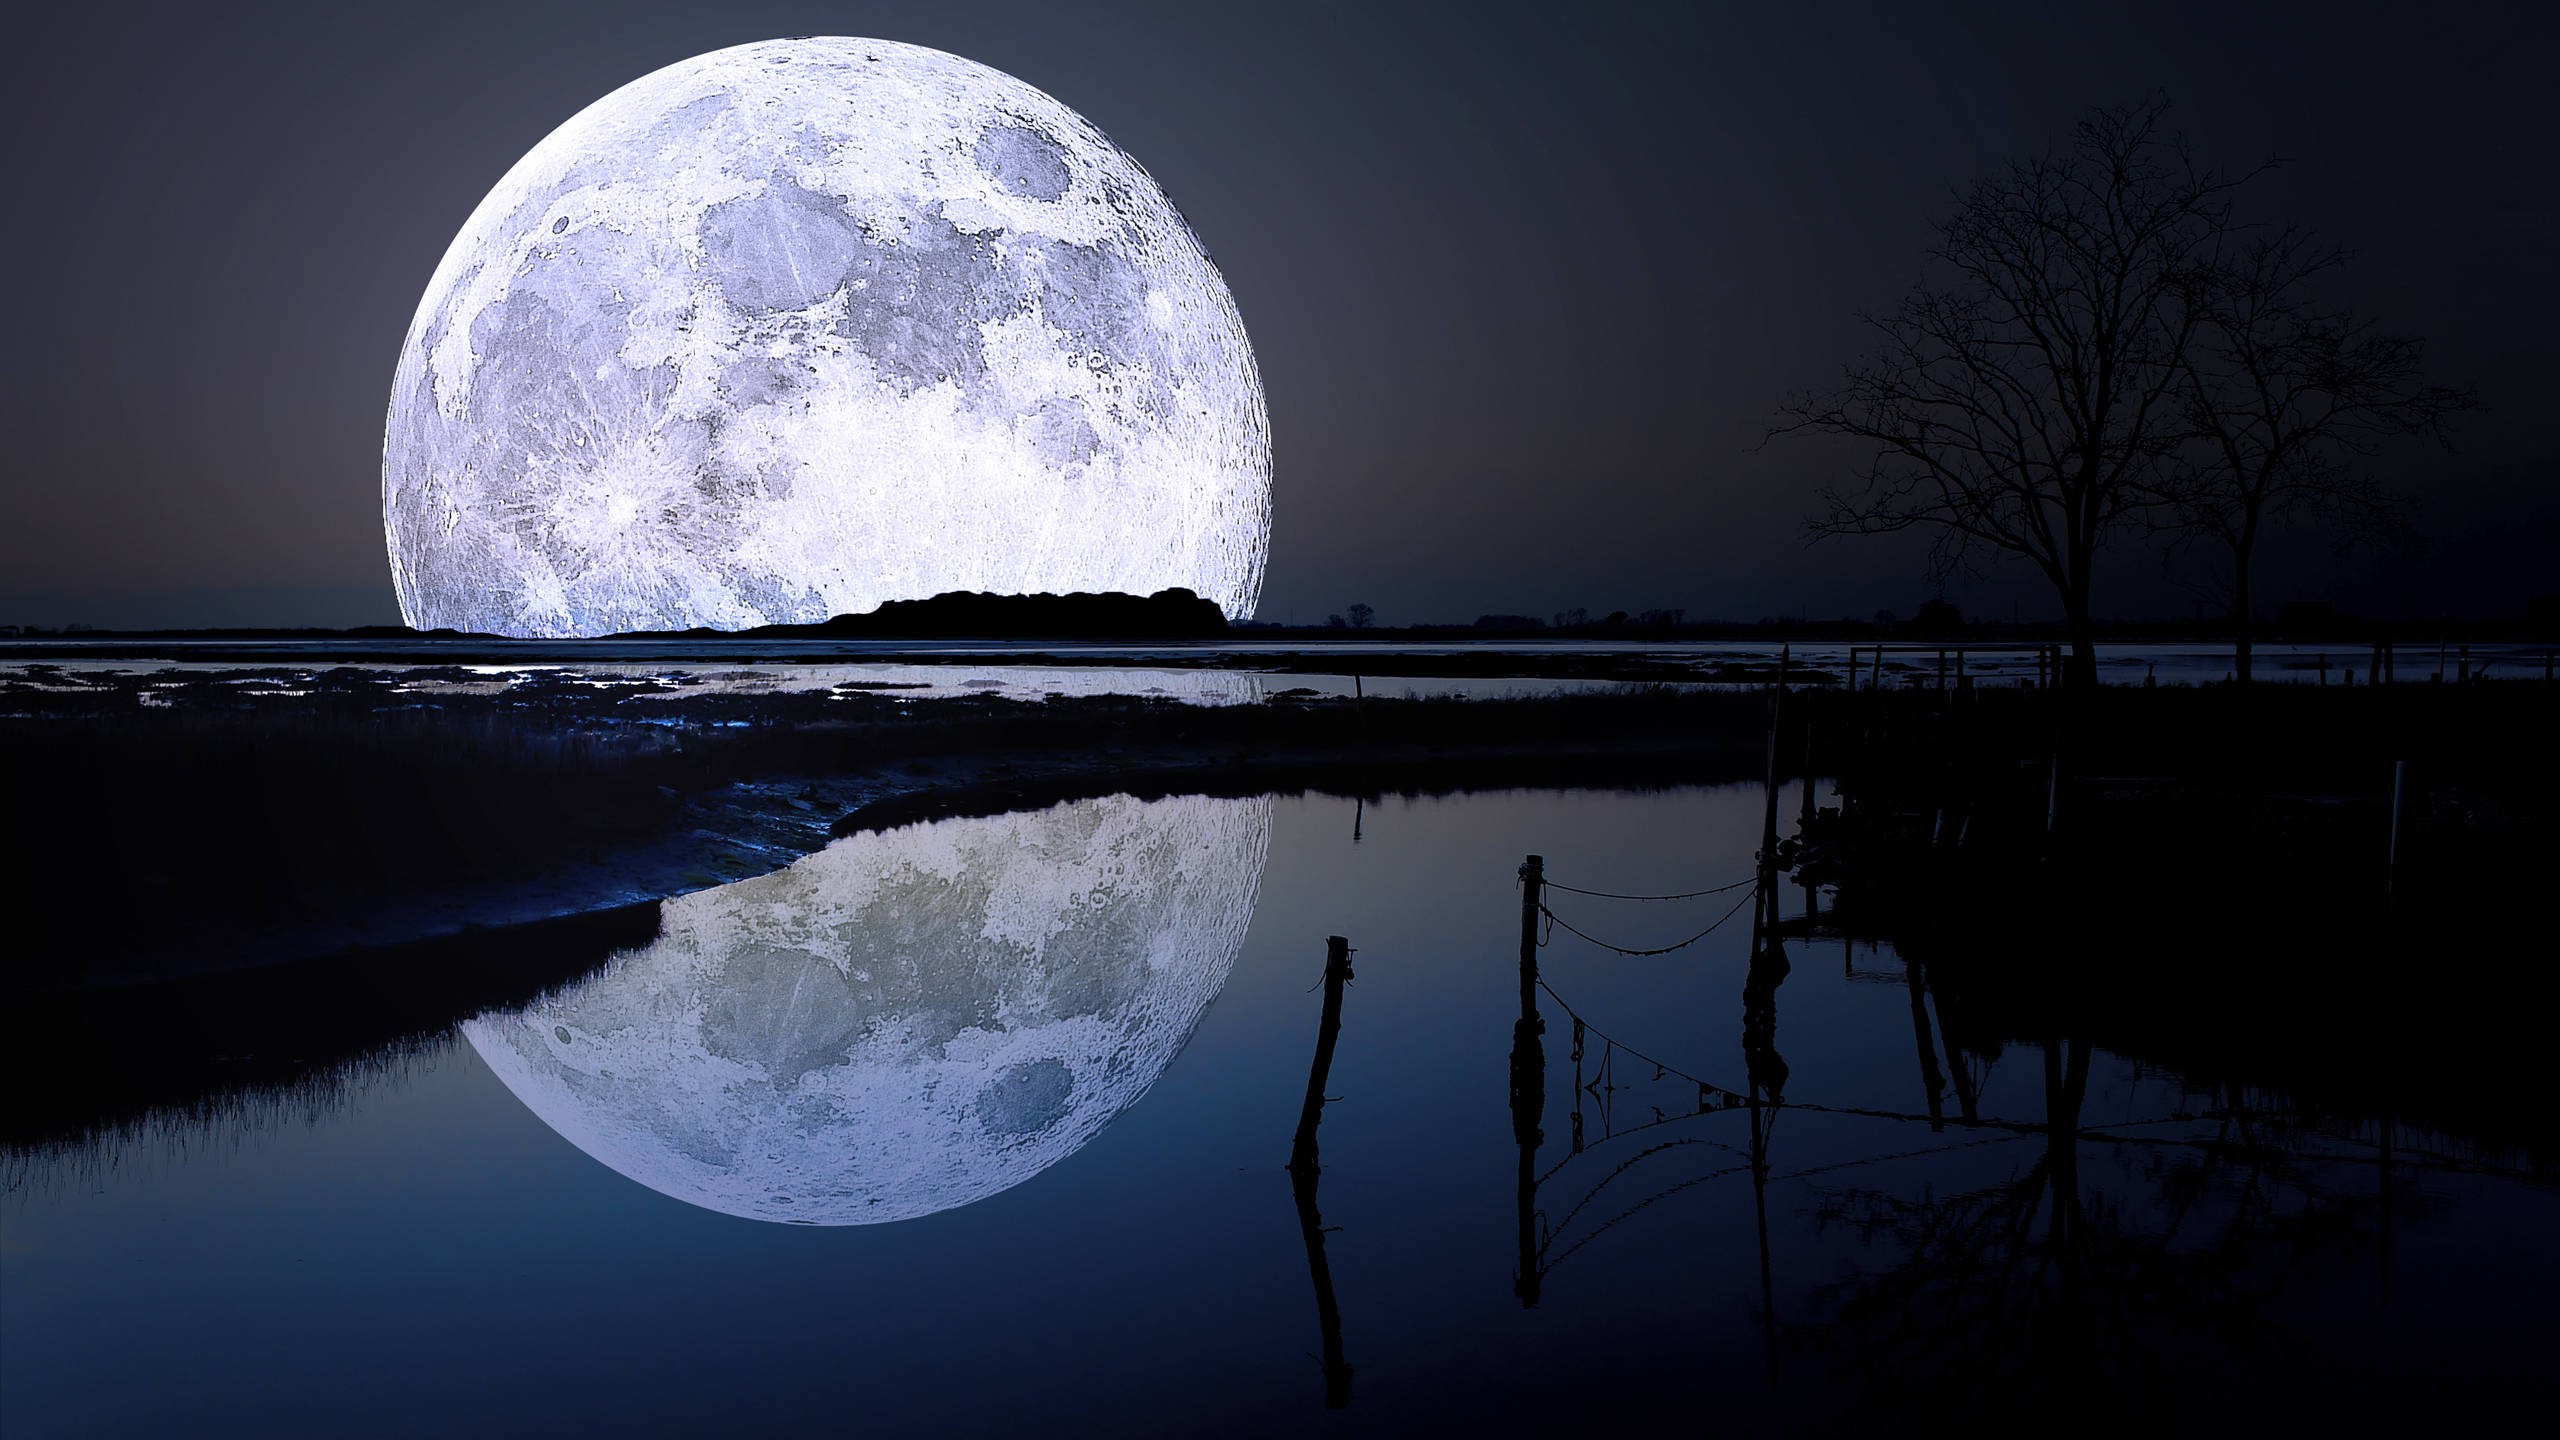 General 2560x1440 Moon digital art landscape night reflection moonlight full moon